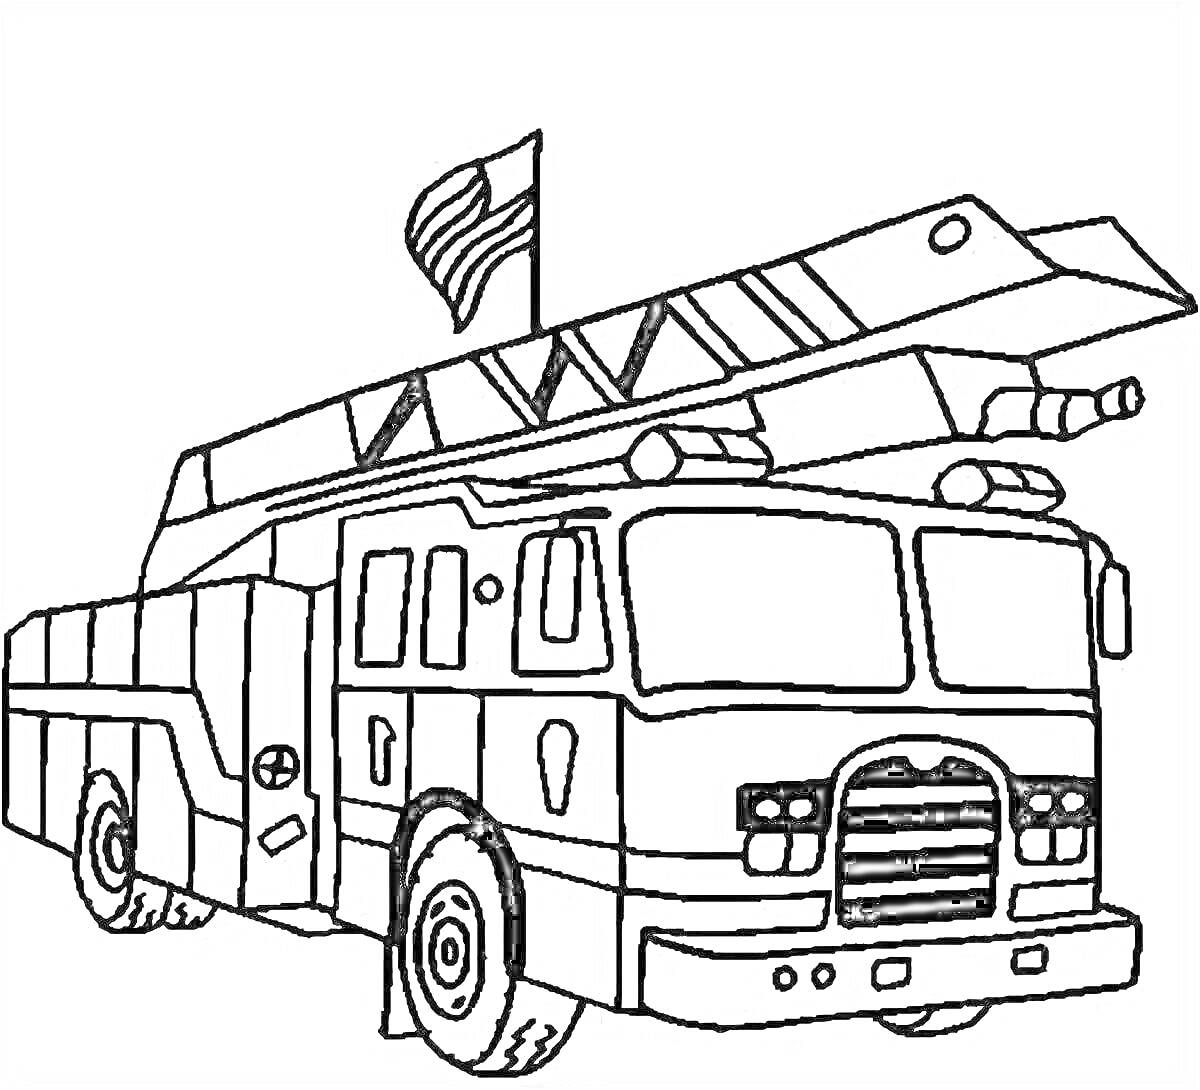 Раскраска Раскраска с изображением пожарной машинки с лестницей и флагом